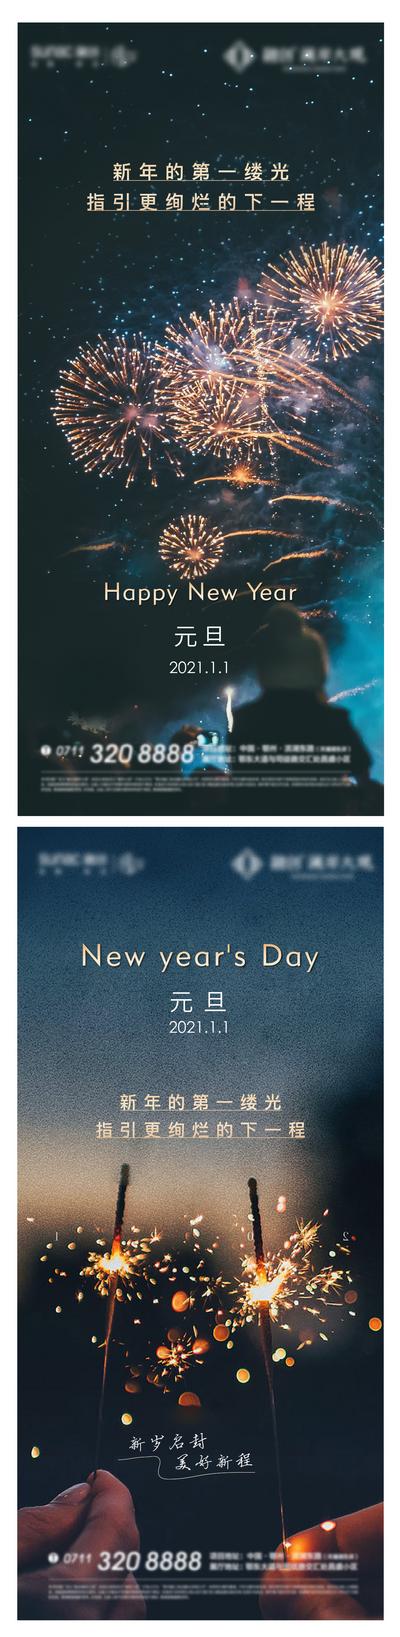 南门网 广告 海报 节气 元旦 新年 加推 烟花